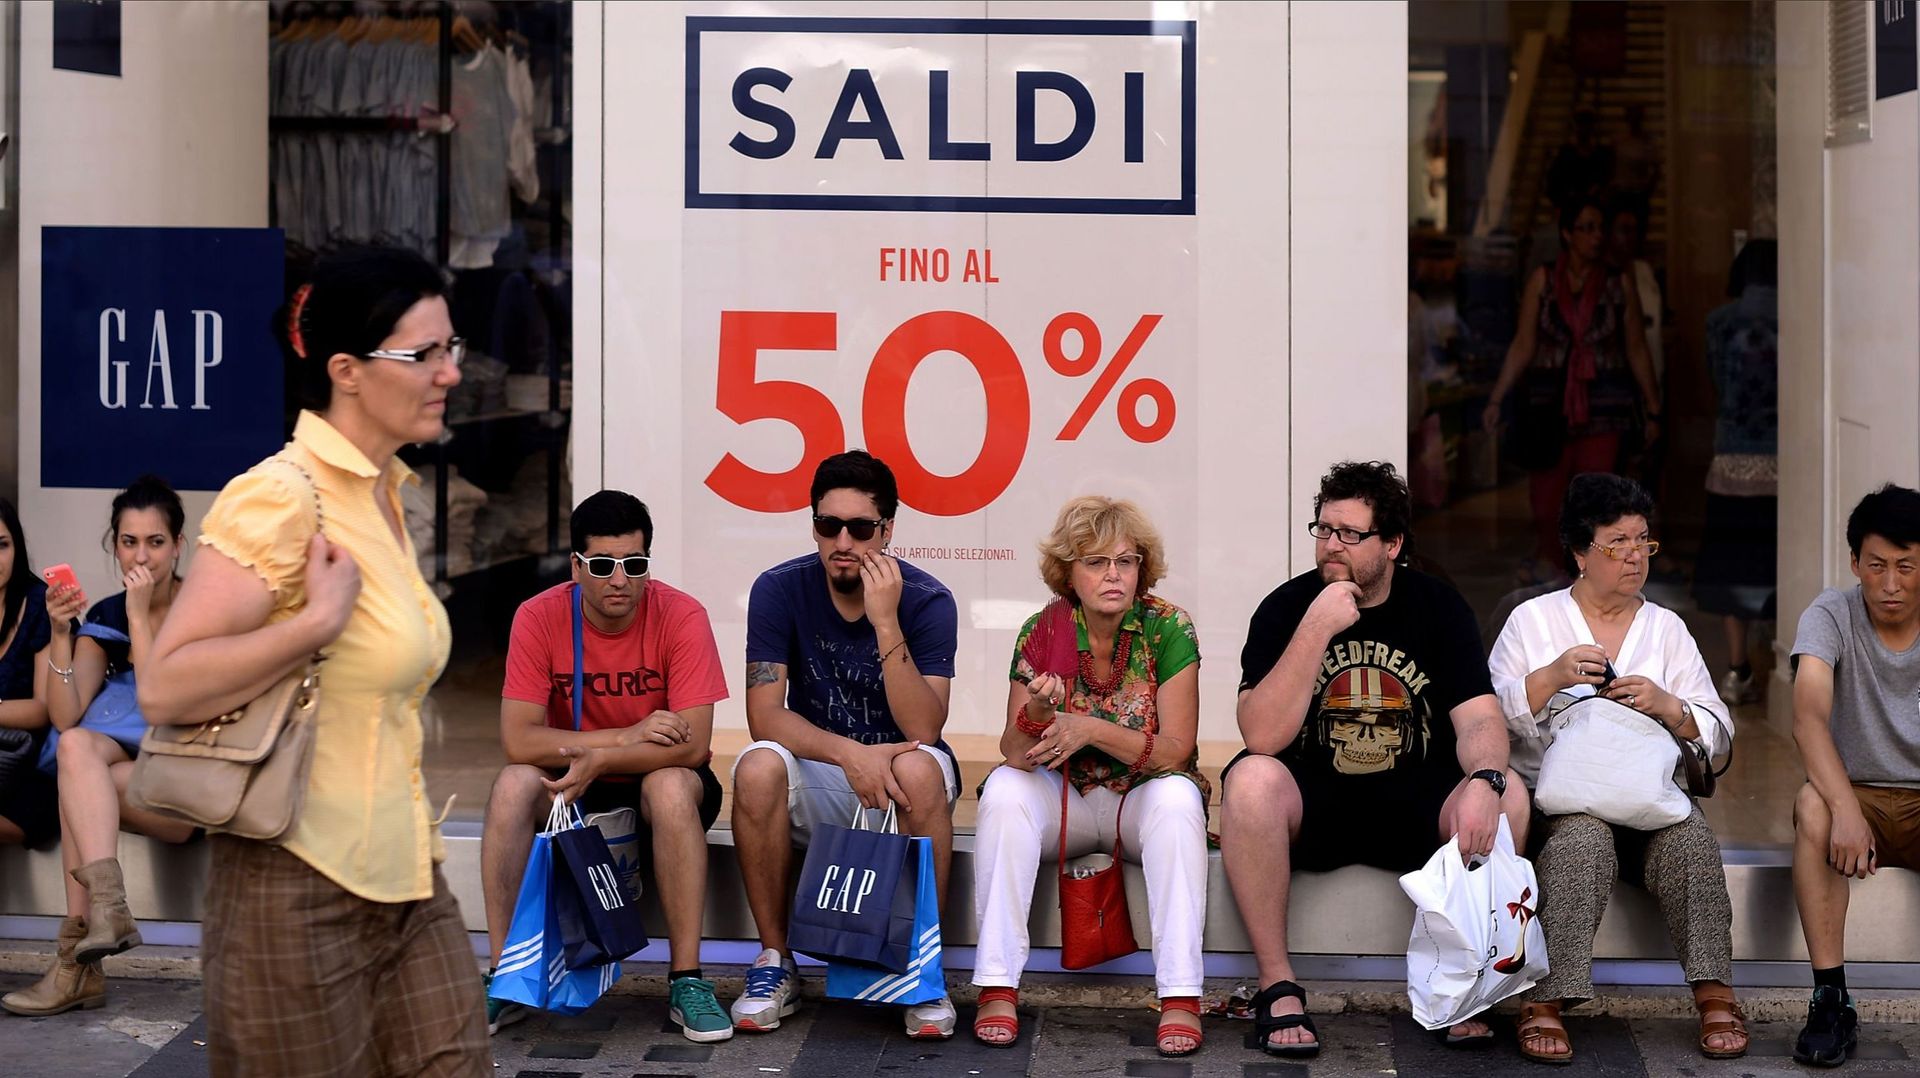 Ouverture des magasins les dimanche et jours fériés: l'Italie veut faire marche arrière